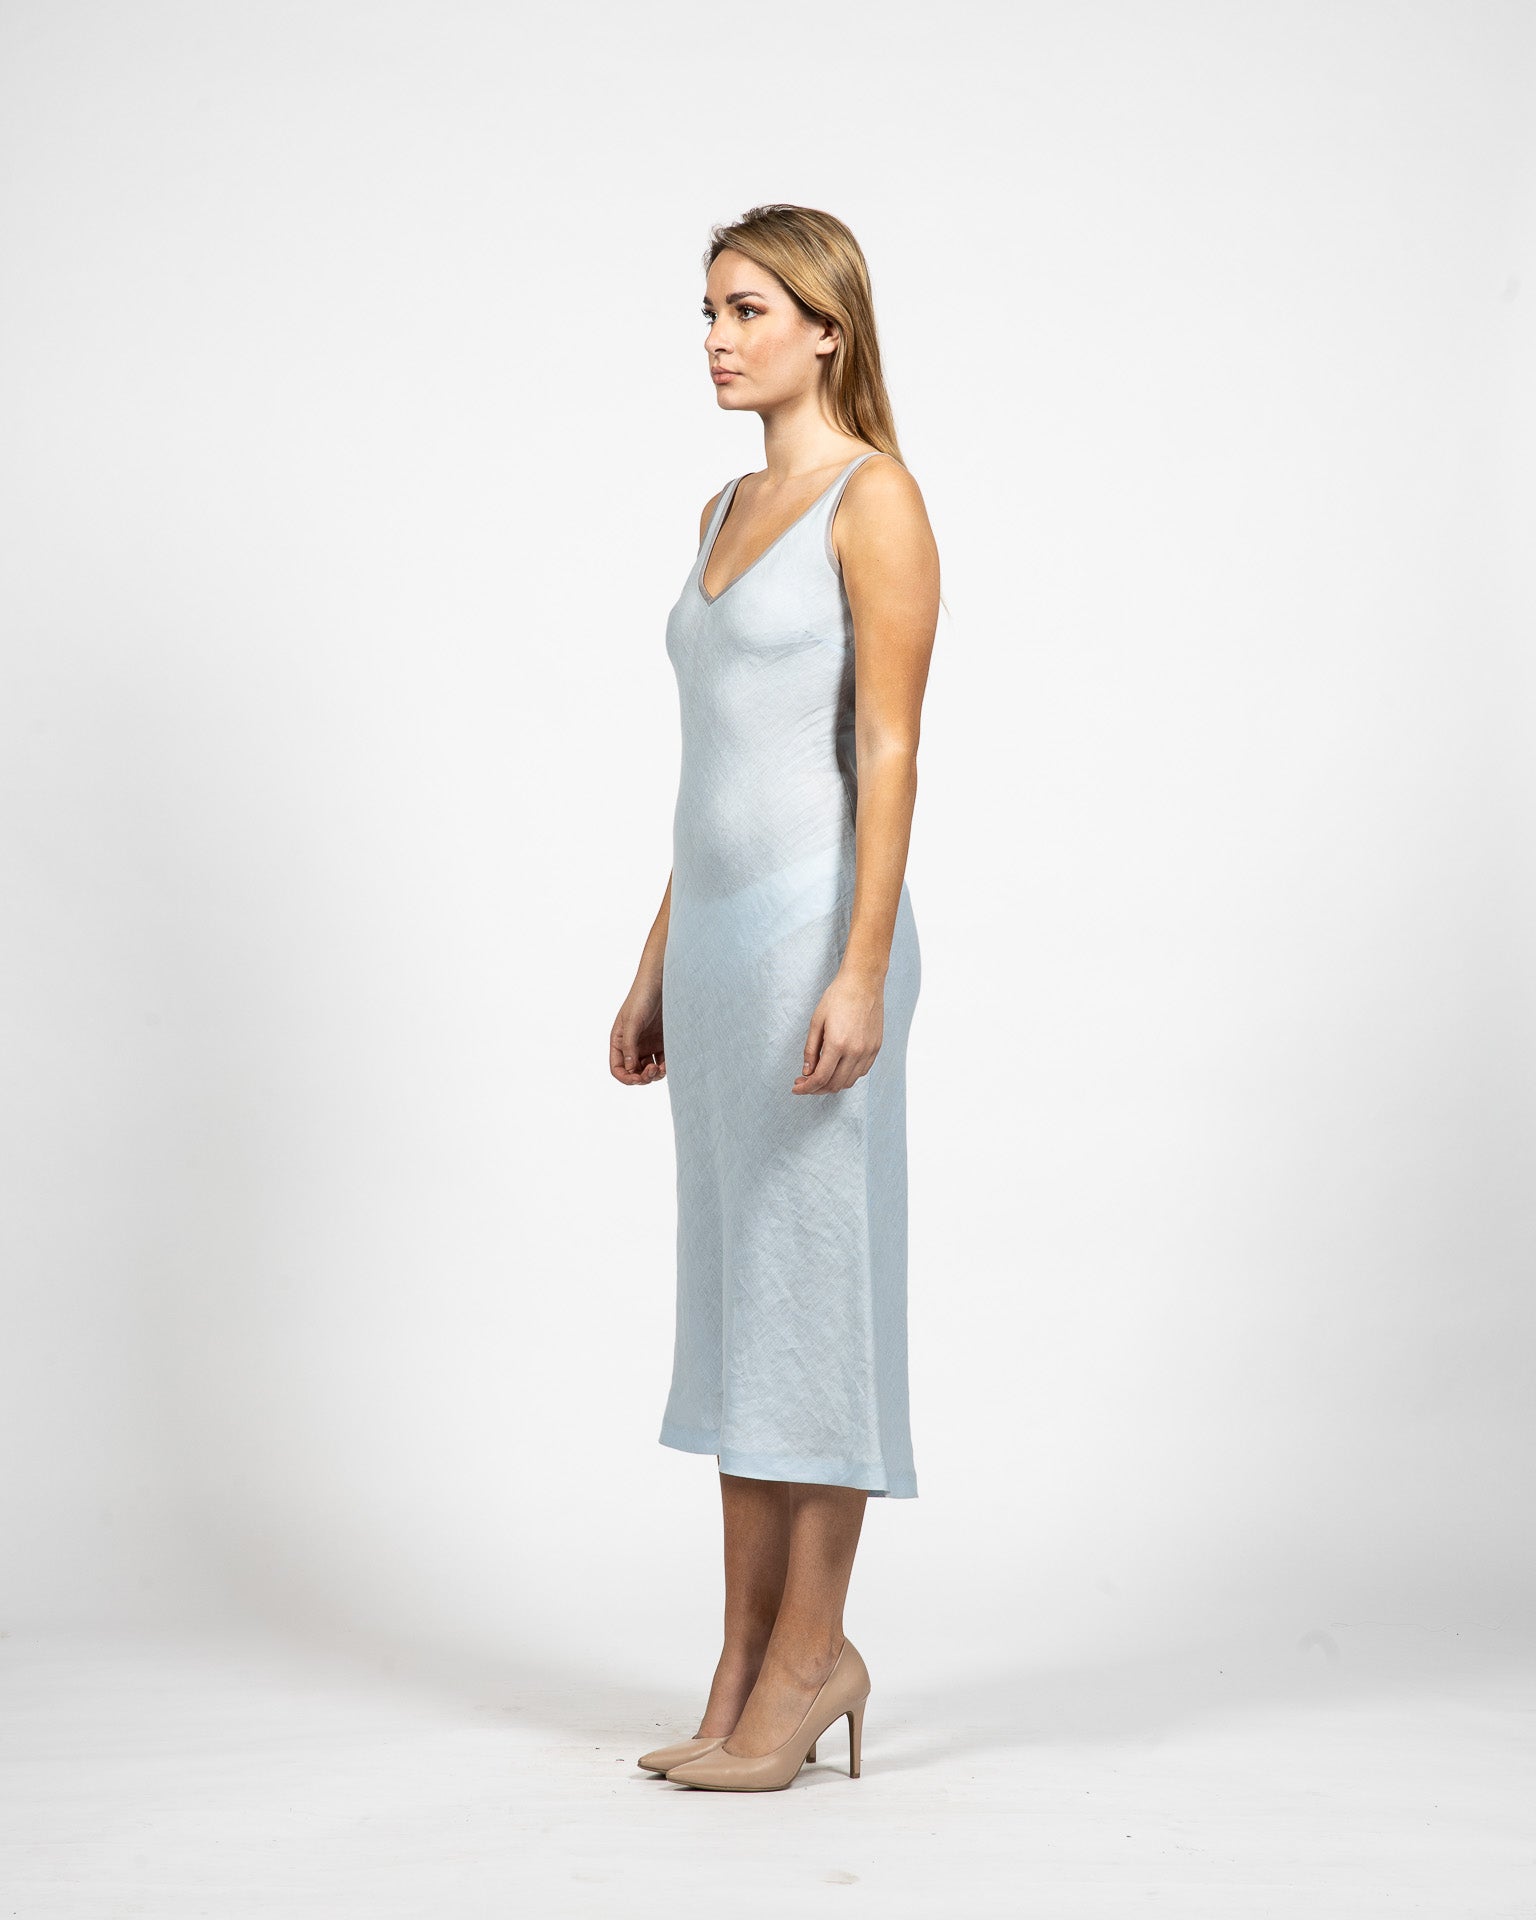 V – Neck Bias Cut Linen Dress - Side View - Samuel Vartan